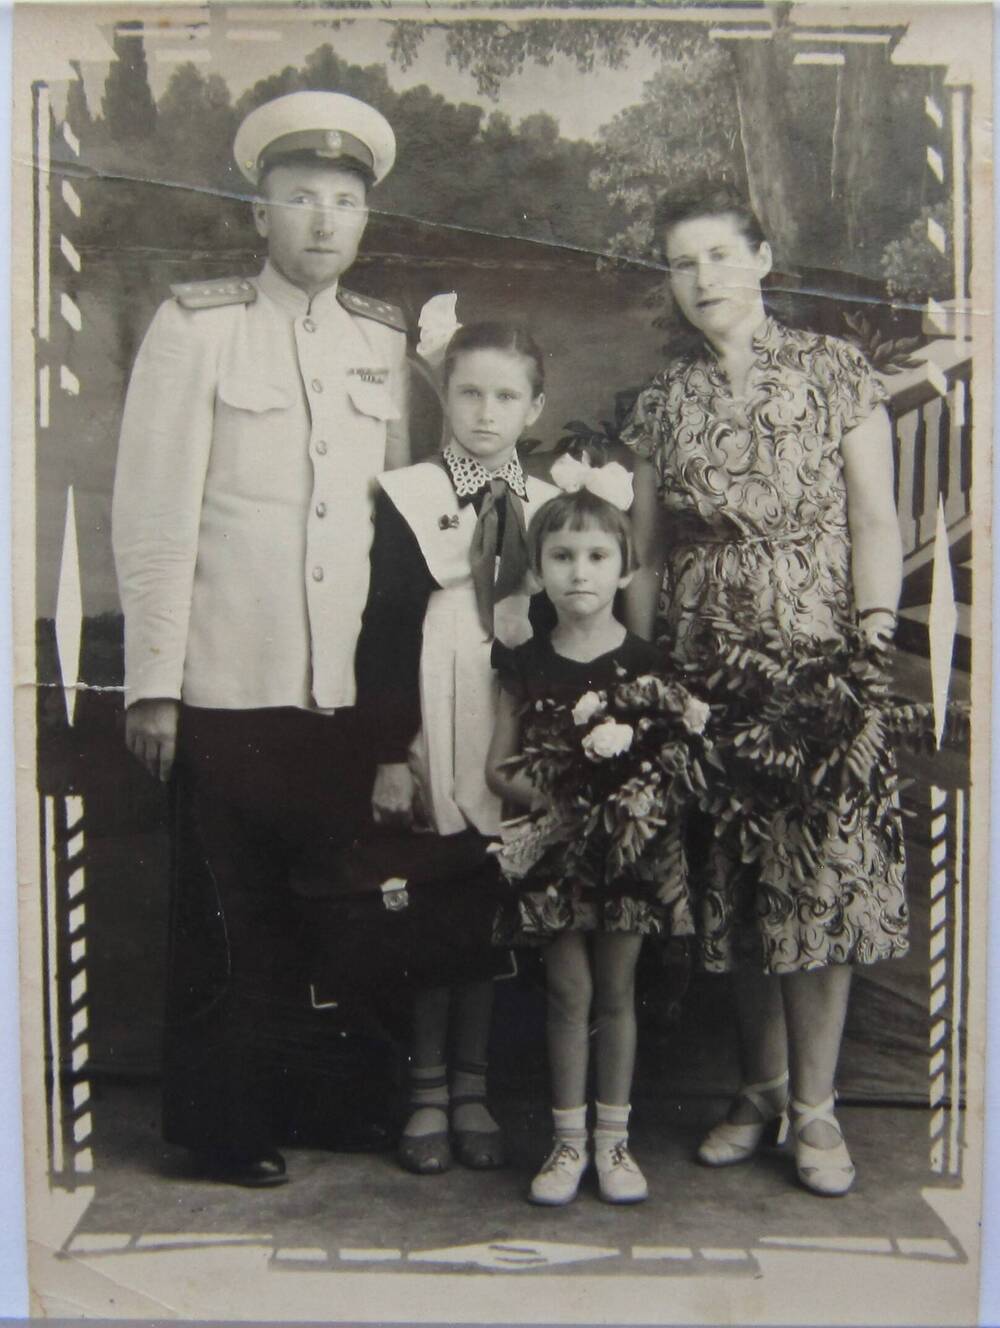 Фотоснимок. На фото семья из 4-х человек-отец, мать и двое девочек. Отец в парадной форме офицера, старшая девочка в школьной форме с белым фартуком. 1957 г. СССР.
Коллекция фотографий 40-50-х годов, собранная 
Березнёвой М. А.